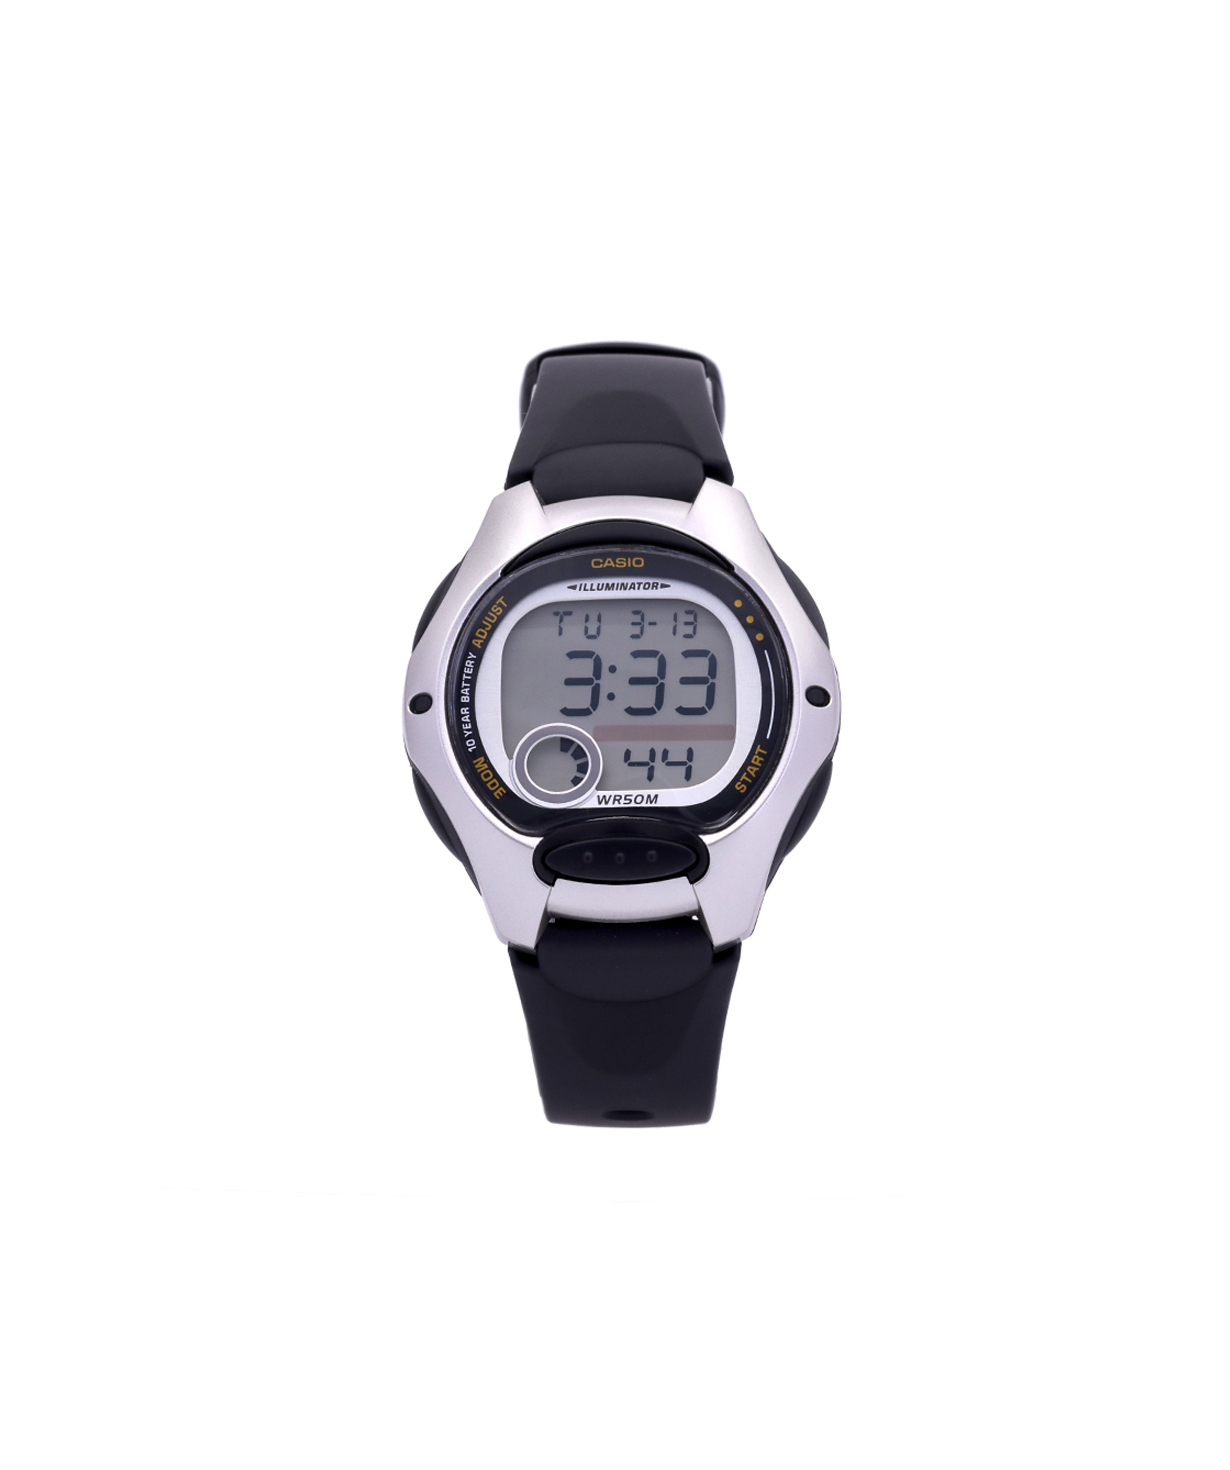 Ժամացույց  «Casio» ձեռքի  LW-200-1AVDF